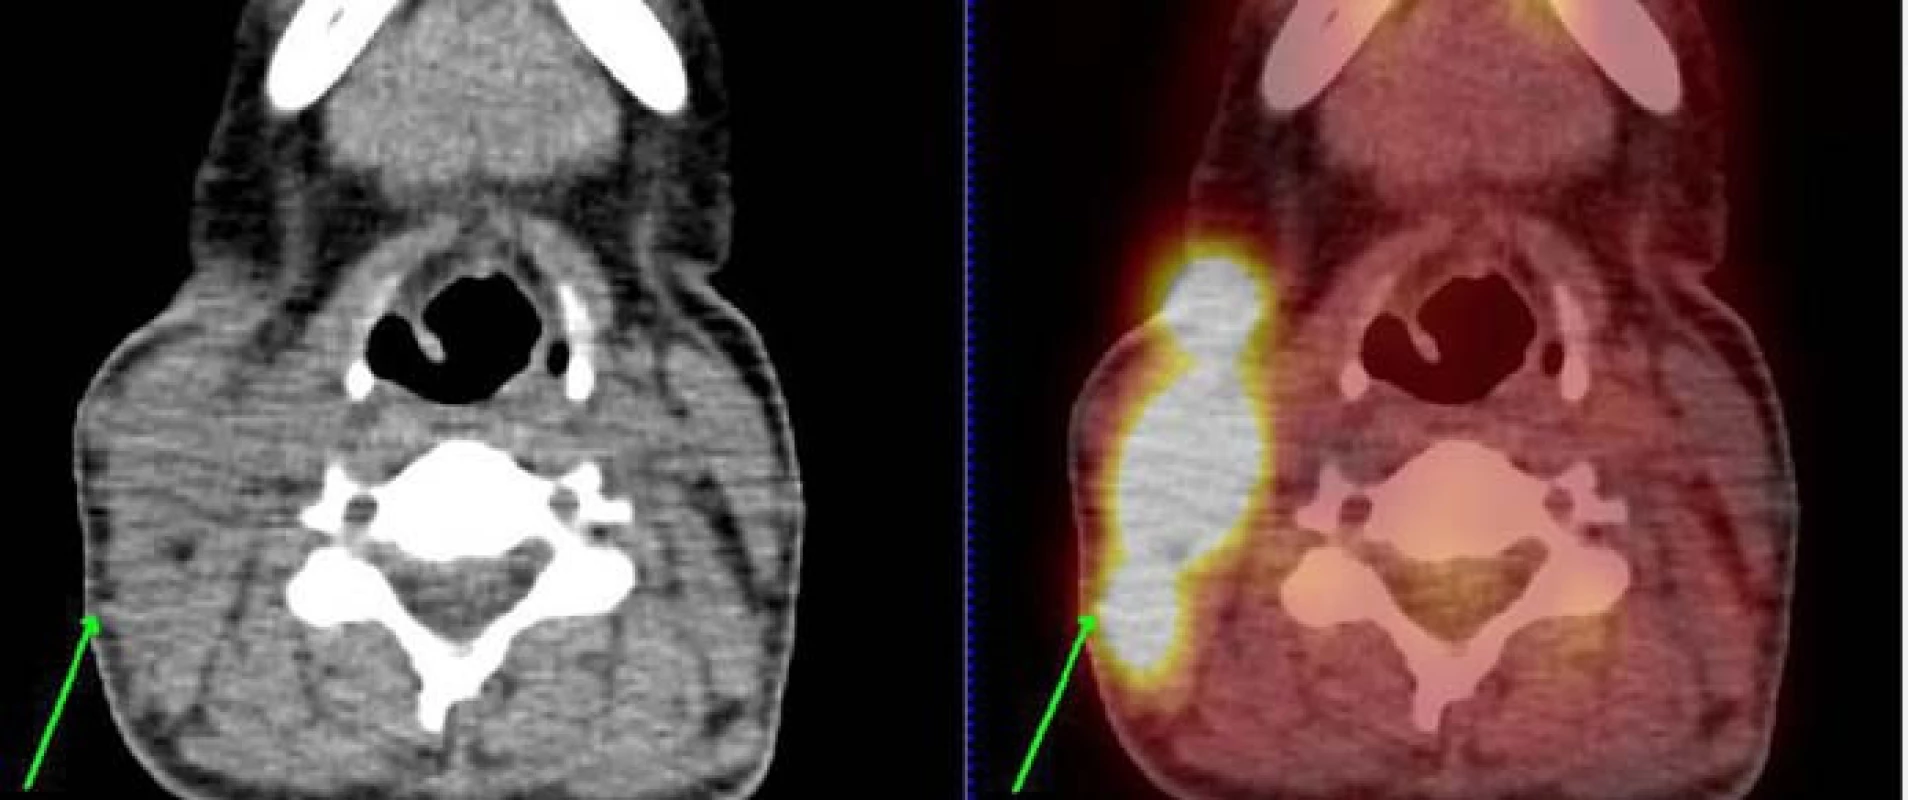 PET/CT nález leden roku 2011 v době stanovení diagnózy. Obrázek vztahující se ke kazuistice č. 2. U pacientky je patrná významná kumulace radioaktivní glukózy v tkáních na pravé straně krku svědčící pro vysokou metabolickou aktivitu tkáně.